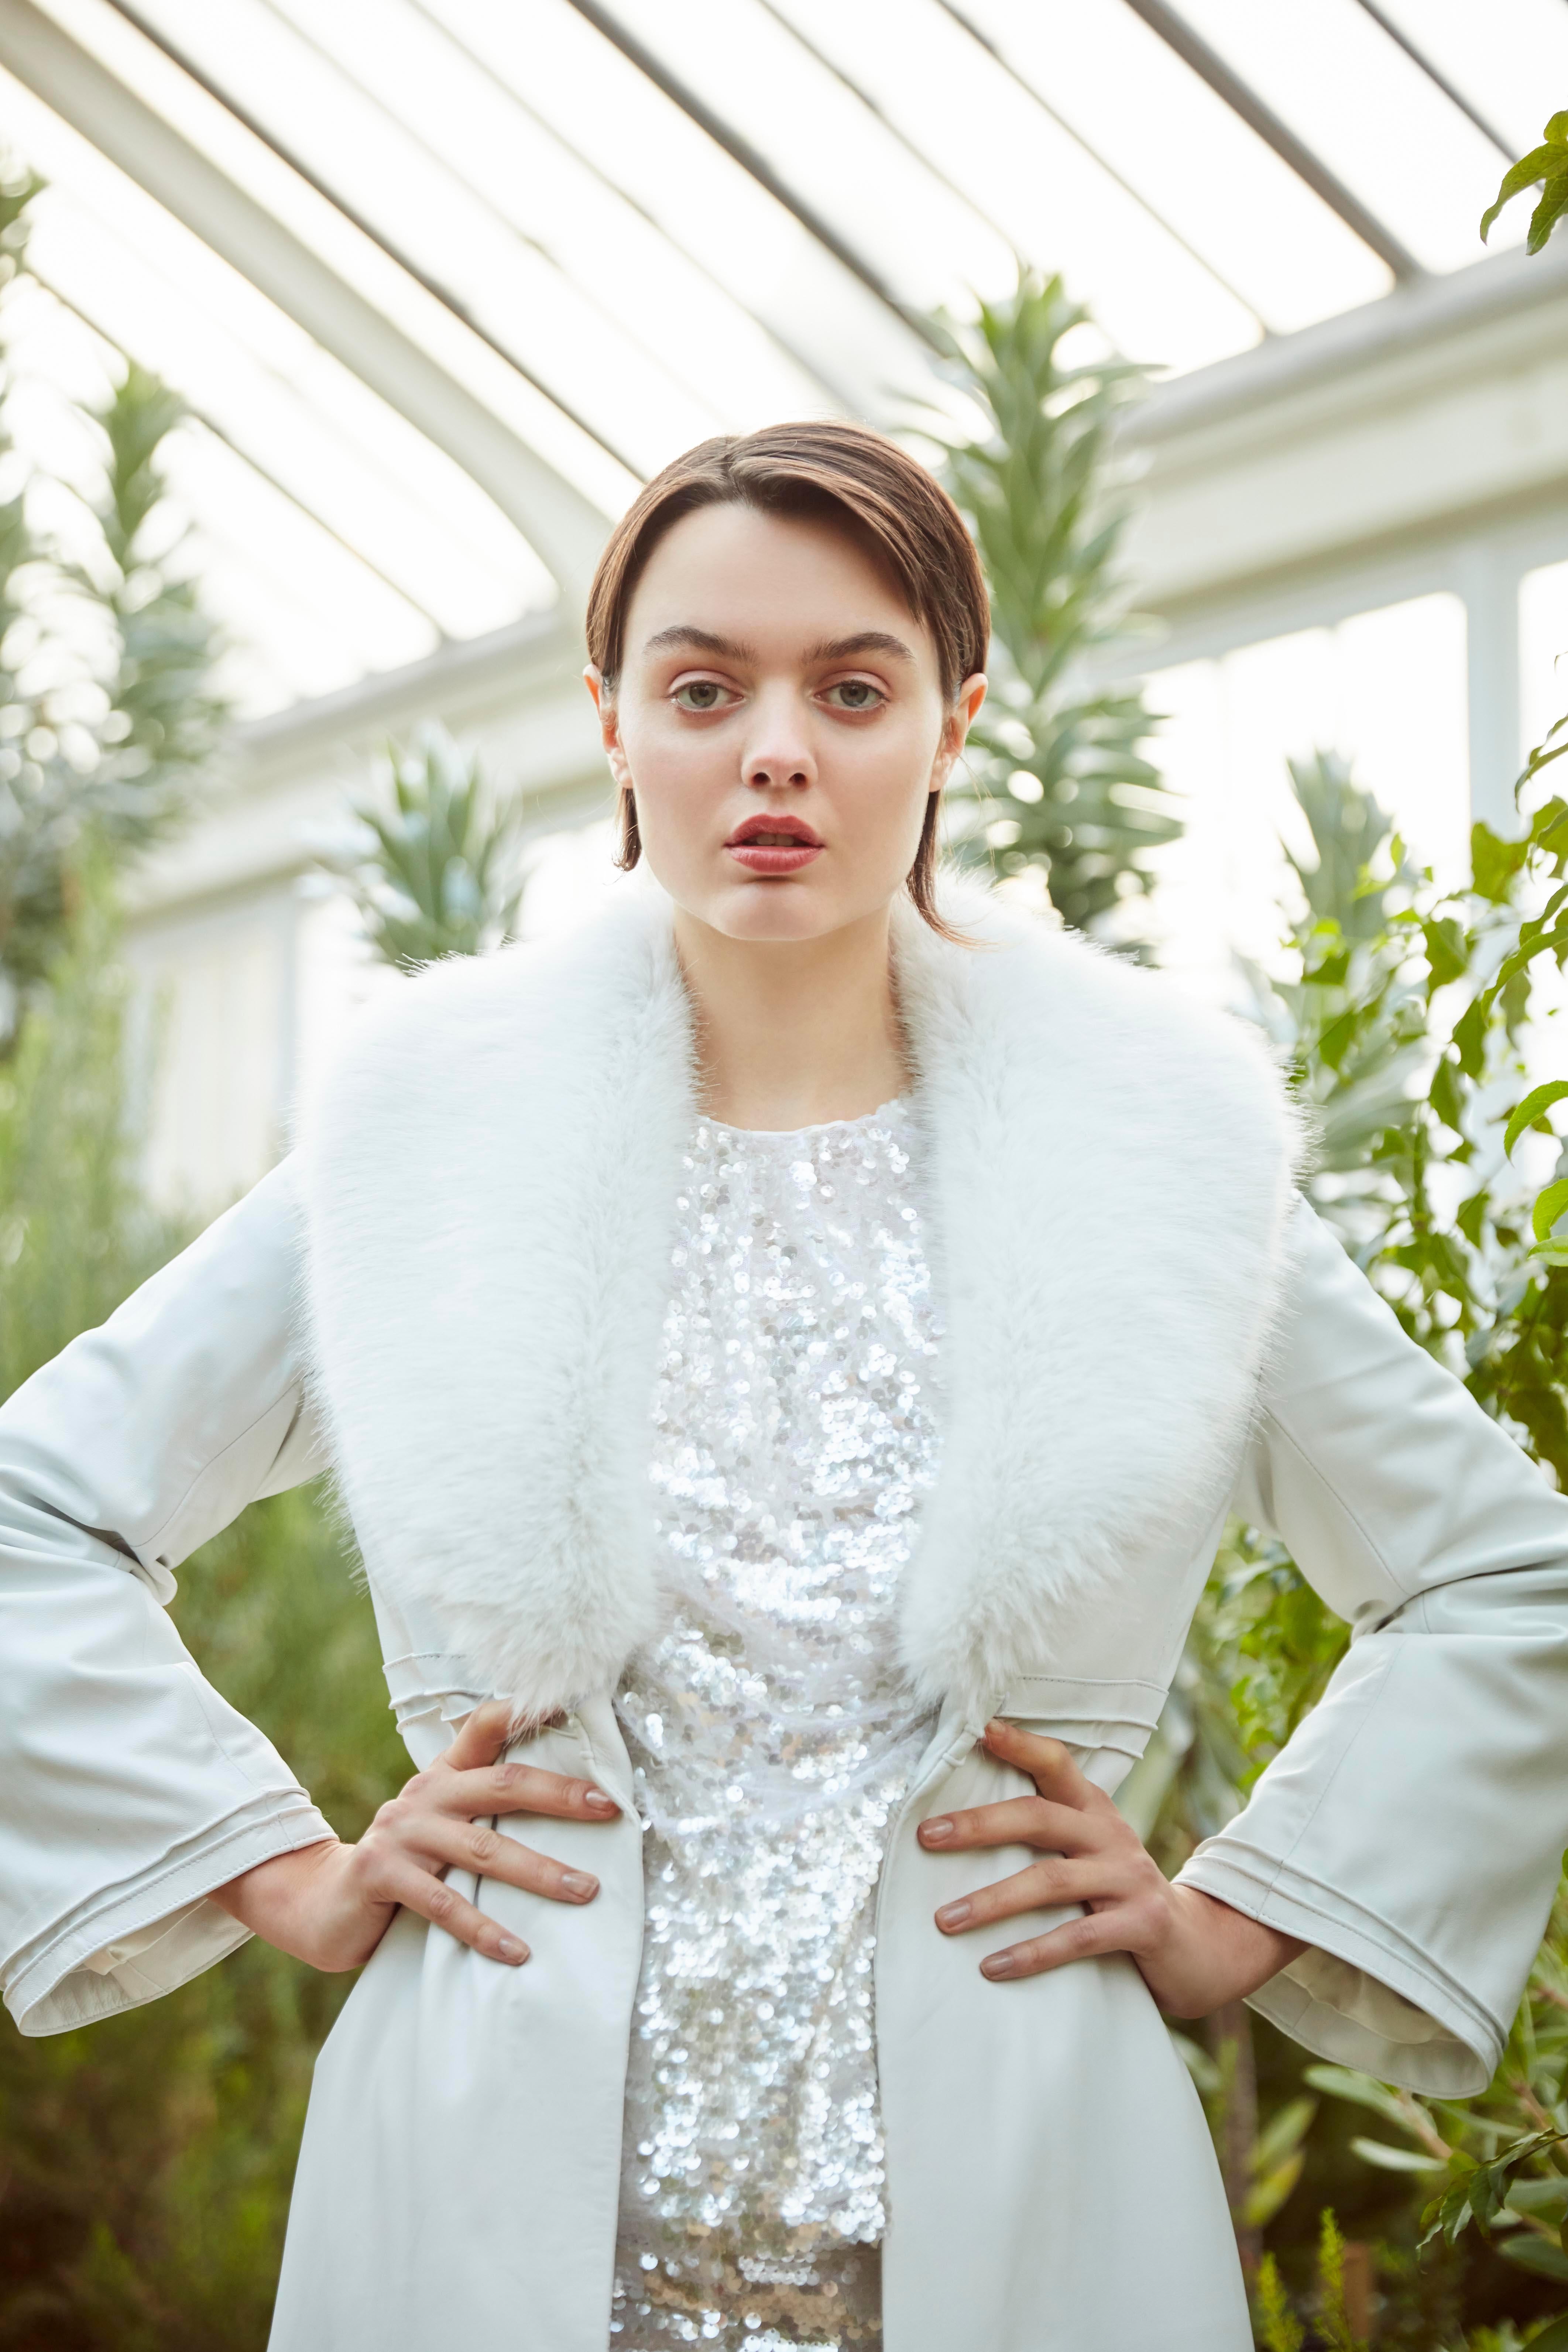 Women's Verheyen London Edward Leather Coat in White with Faux Fur - Size uk 6  For Sale